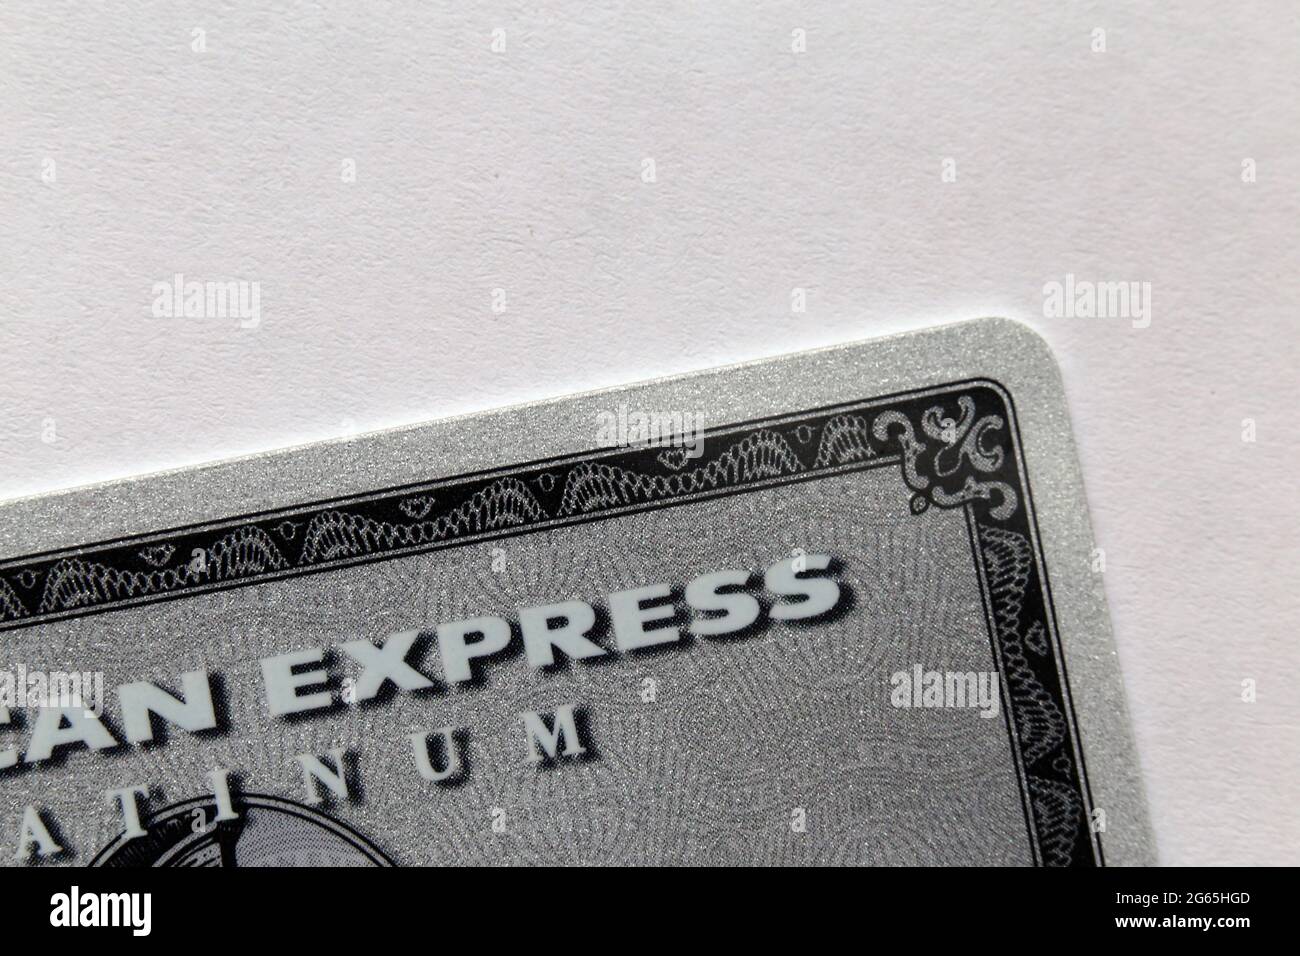 American Express Platinum (Amex Platinum) Karte in einer Nahaufnahme - dies ist die alte Amex Platinum Karte aus Kunststoff. April 2020, Espoo, Finnland. Stockfoto